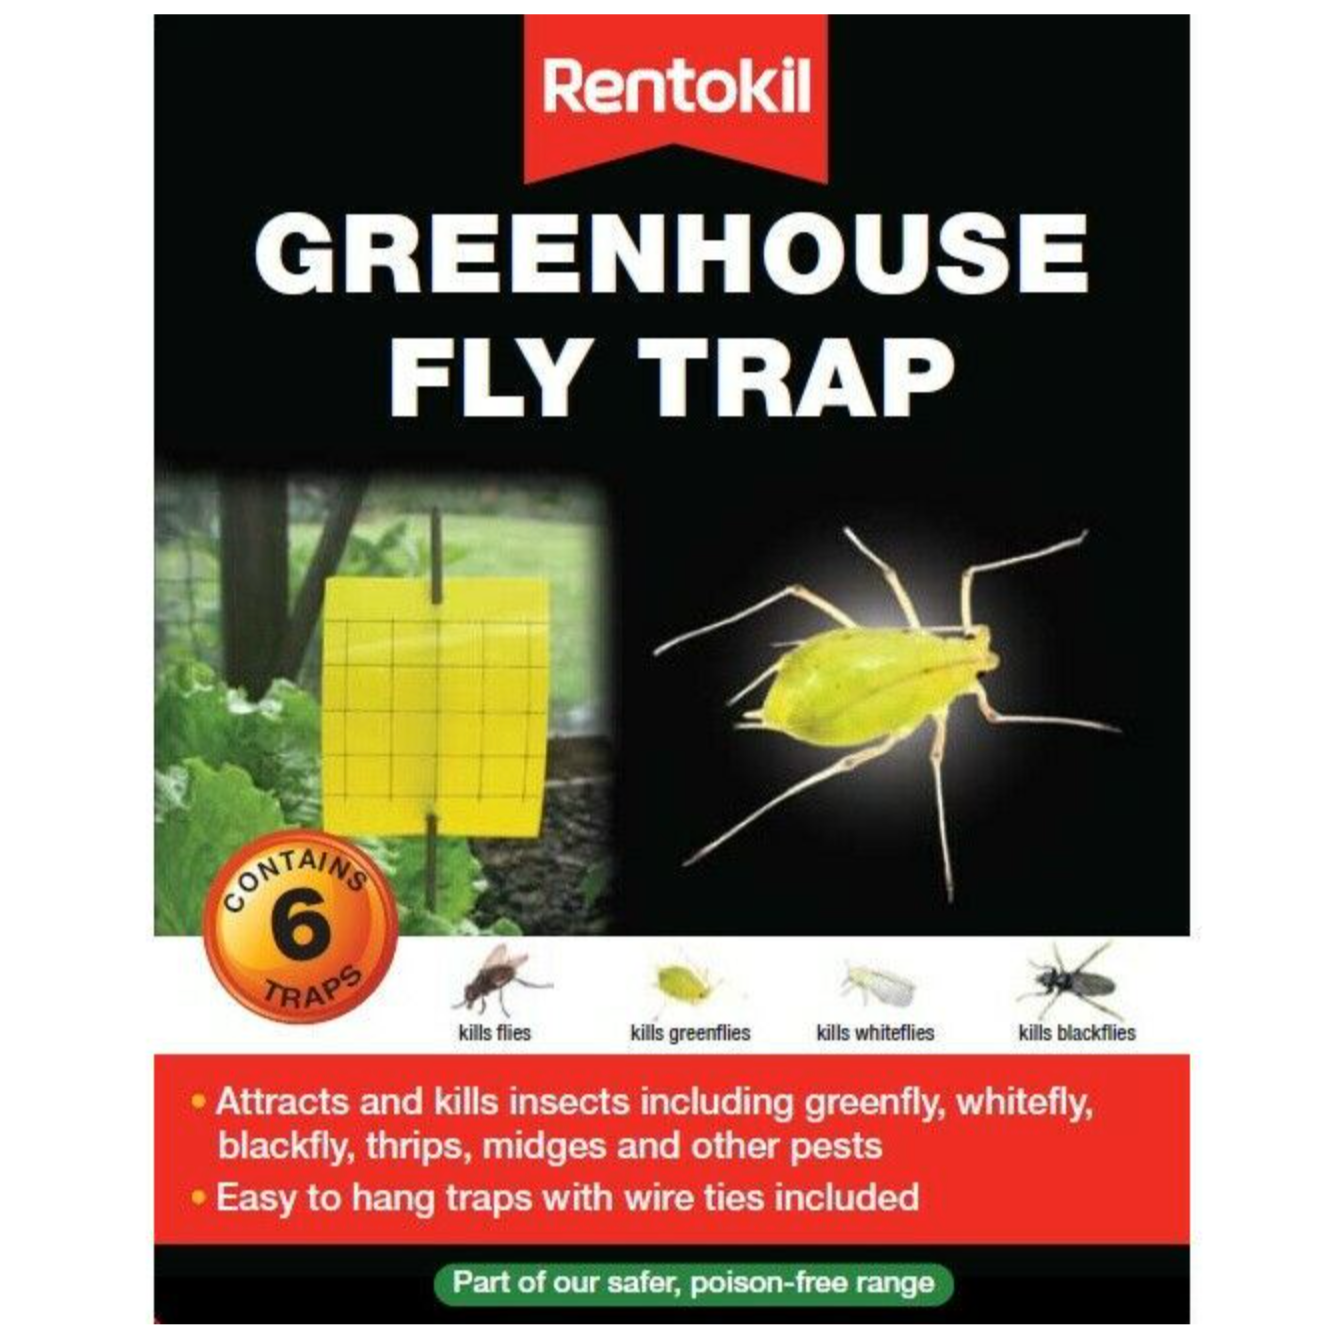 Rentokil Greenhouse Fly Trap